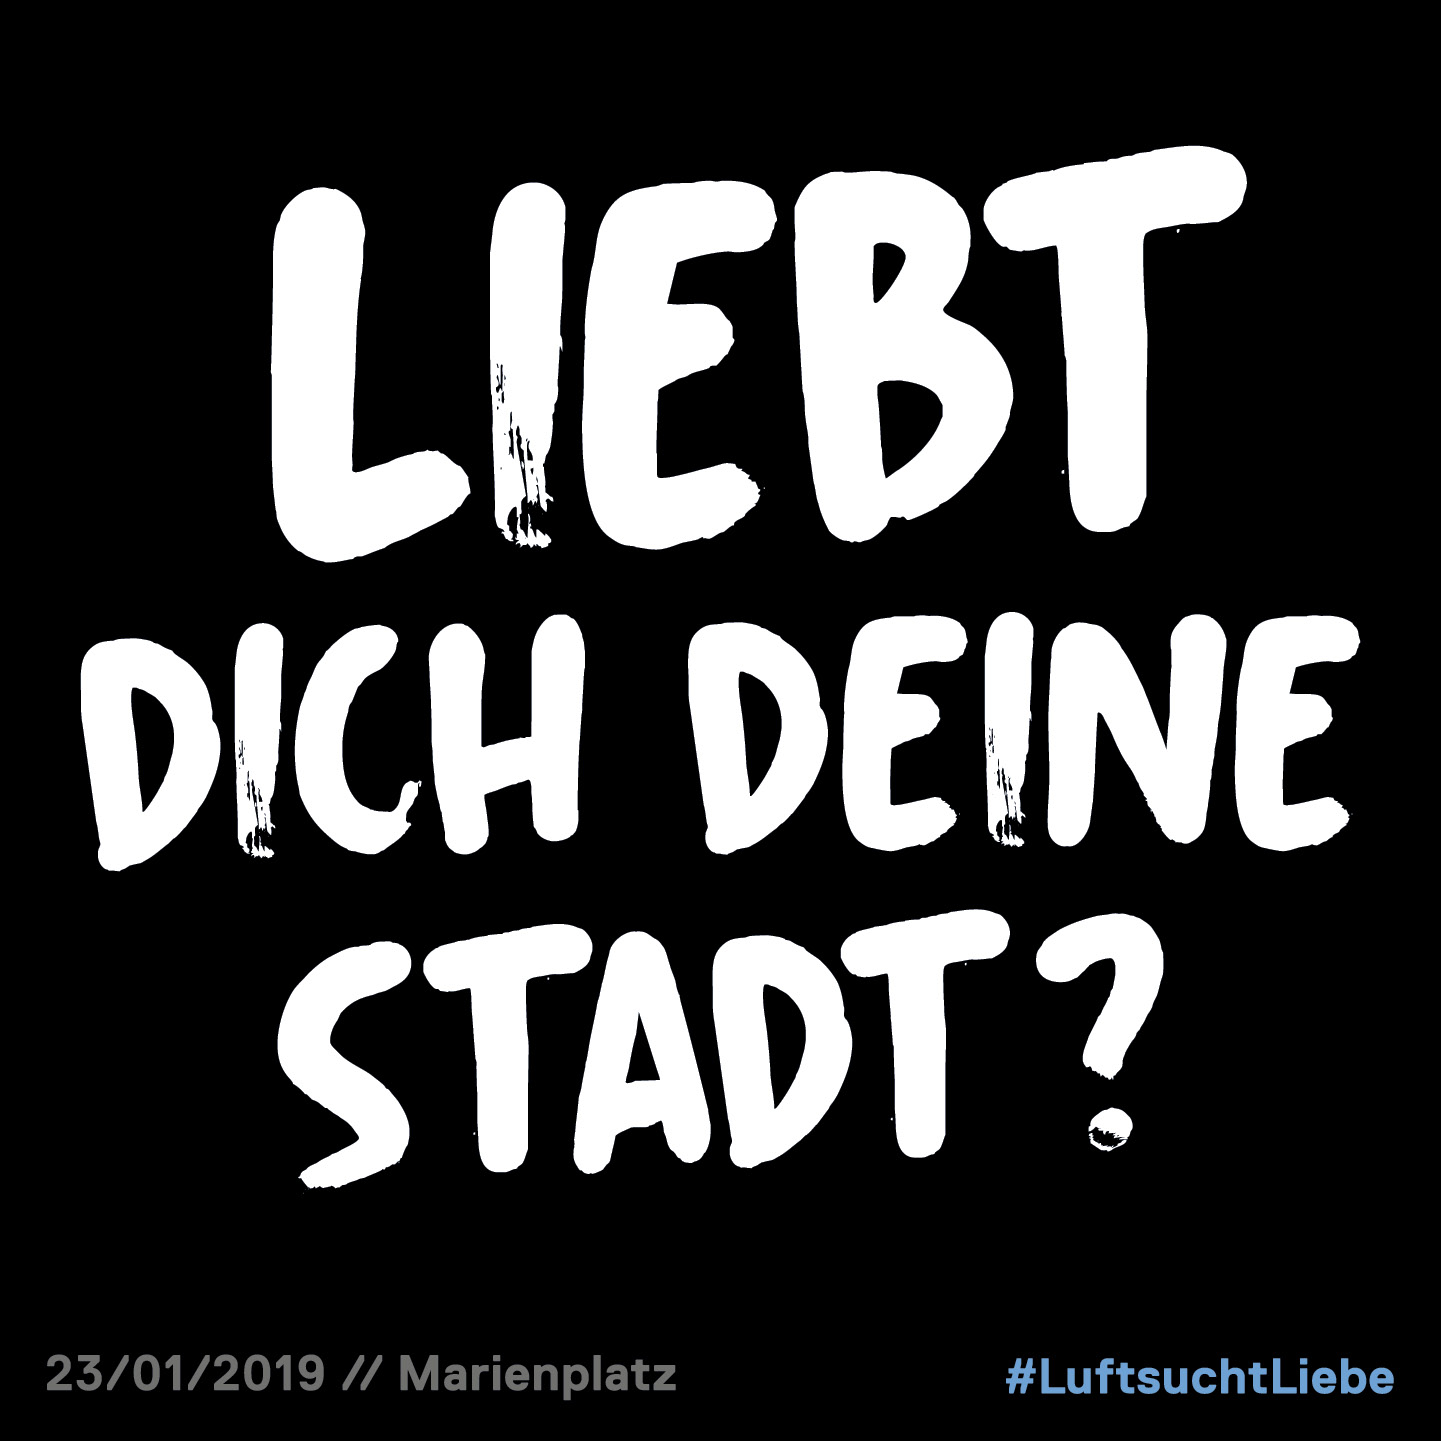 07. Januar 2019 – Liebt Dich Deine Stadt? #LuftsuchtLiebe >>